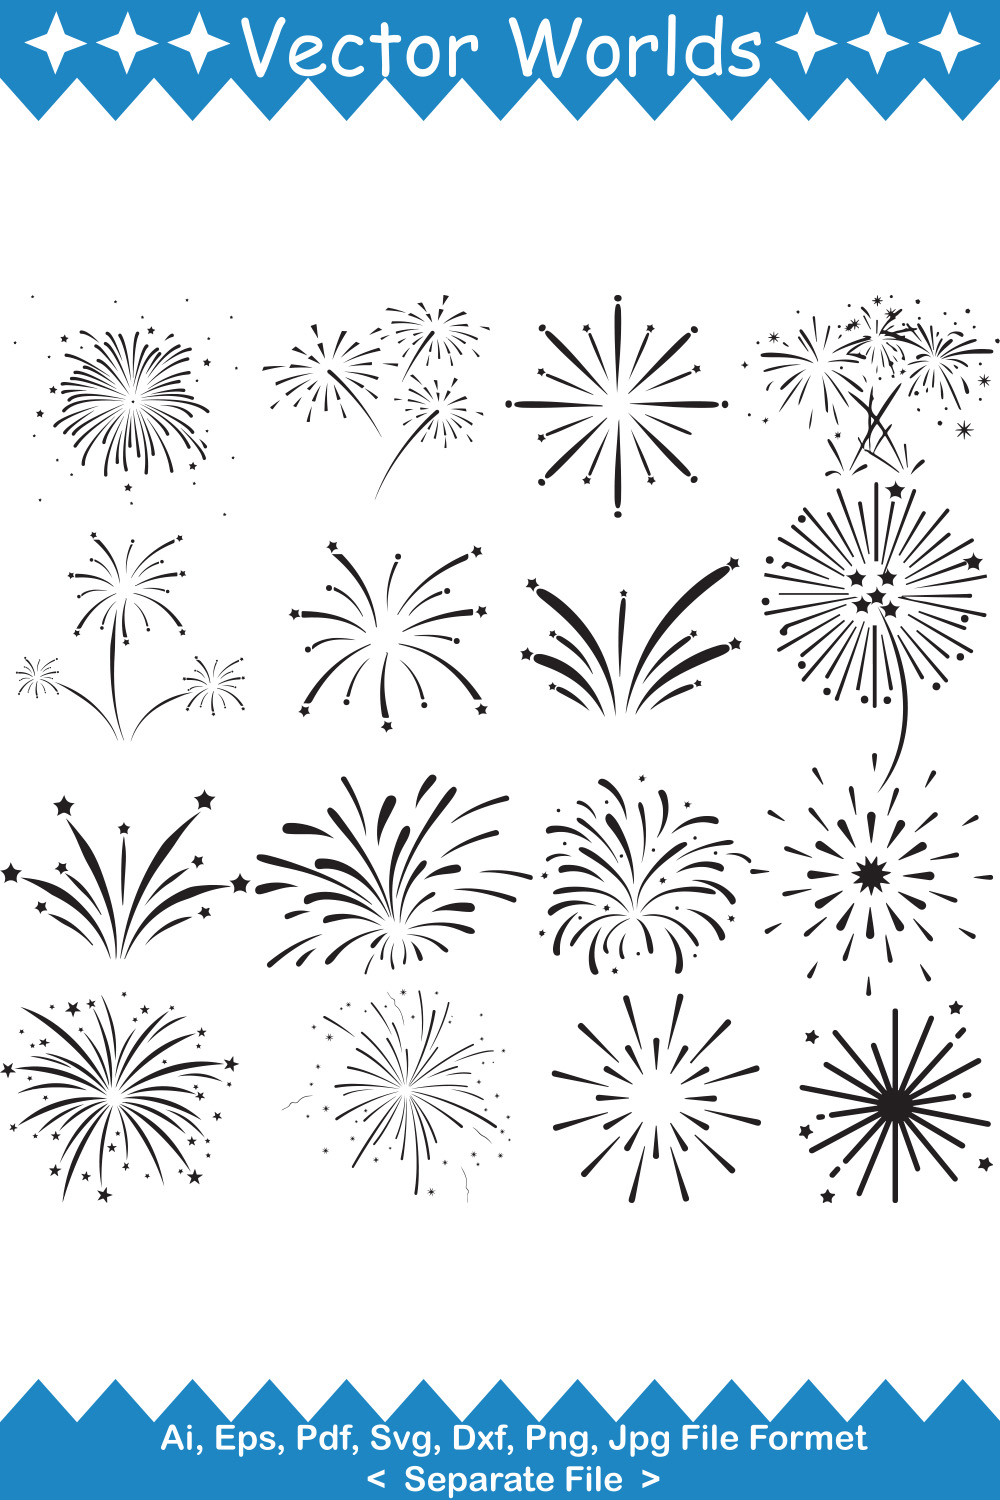 Fireworks SVG Vector Design pinterest image.